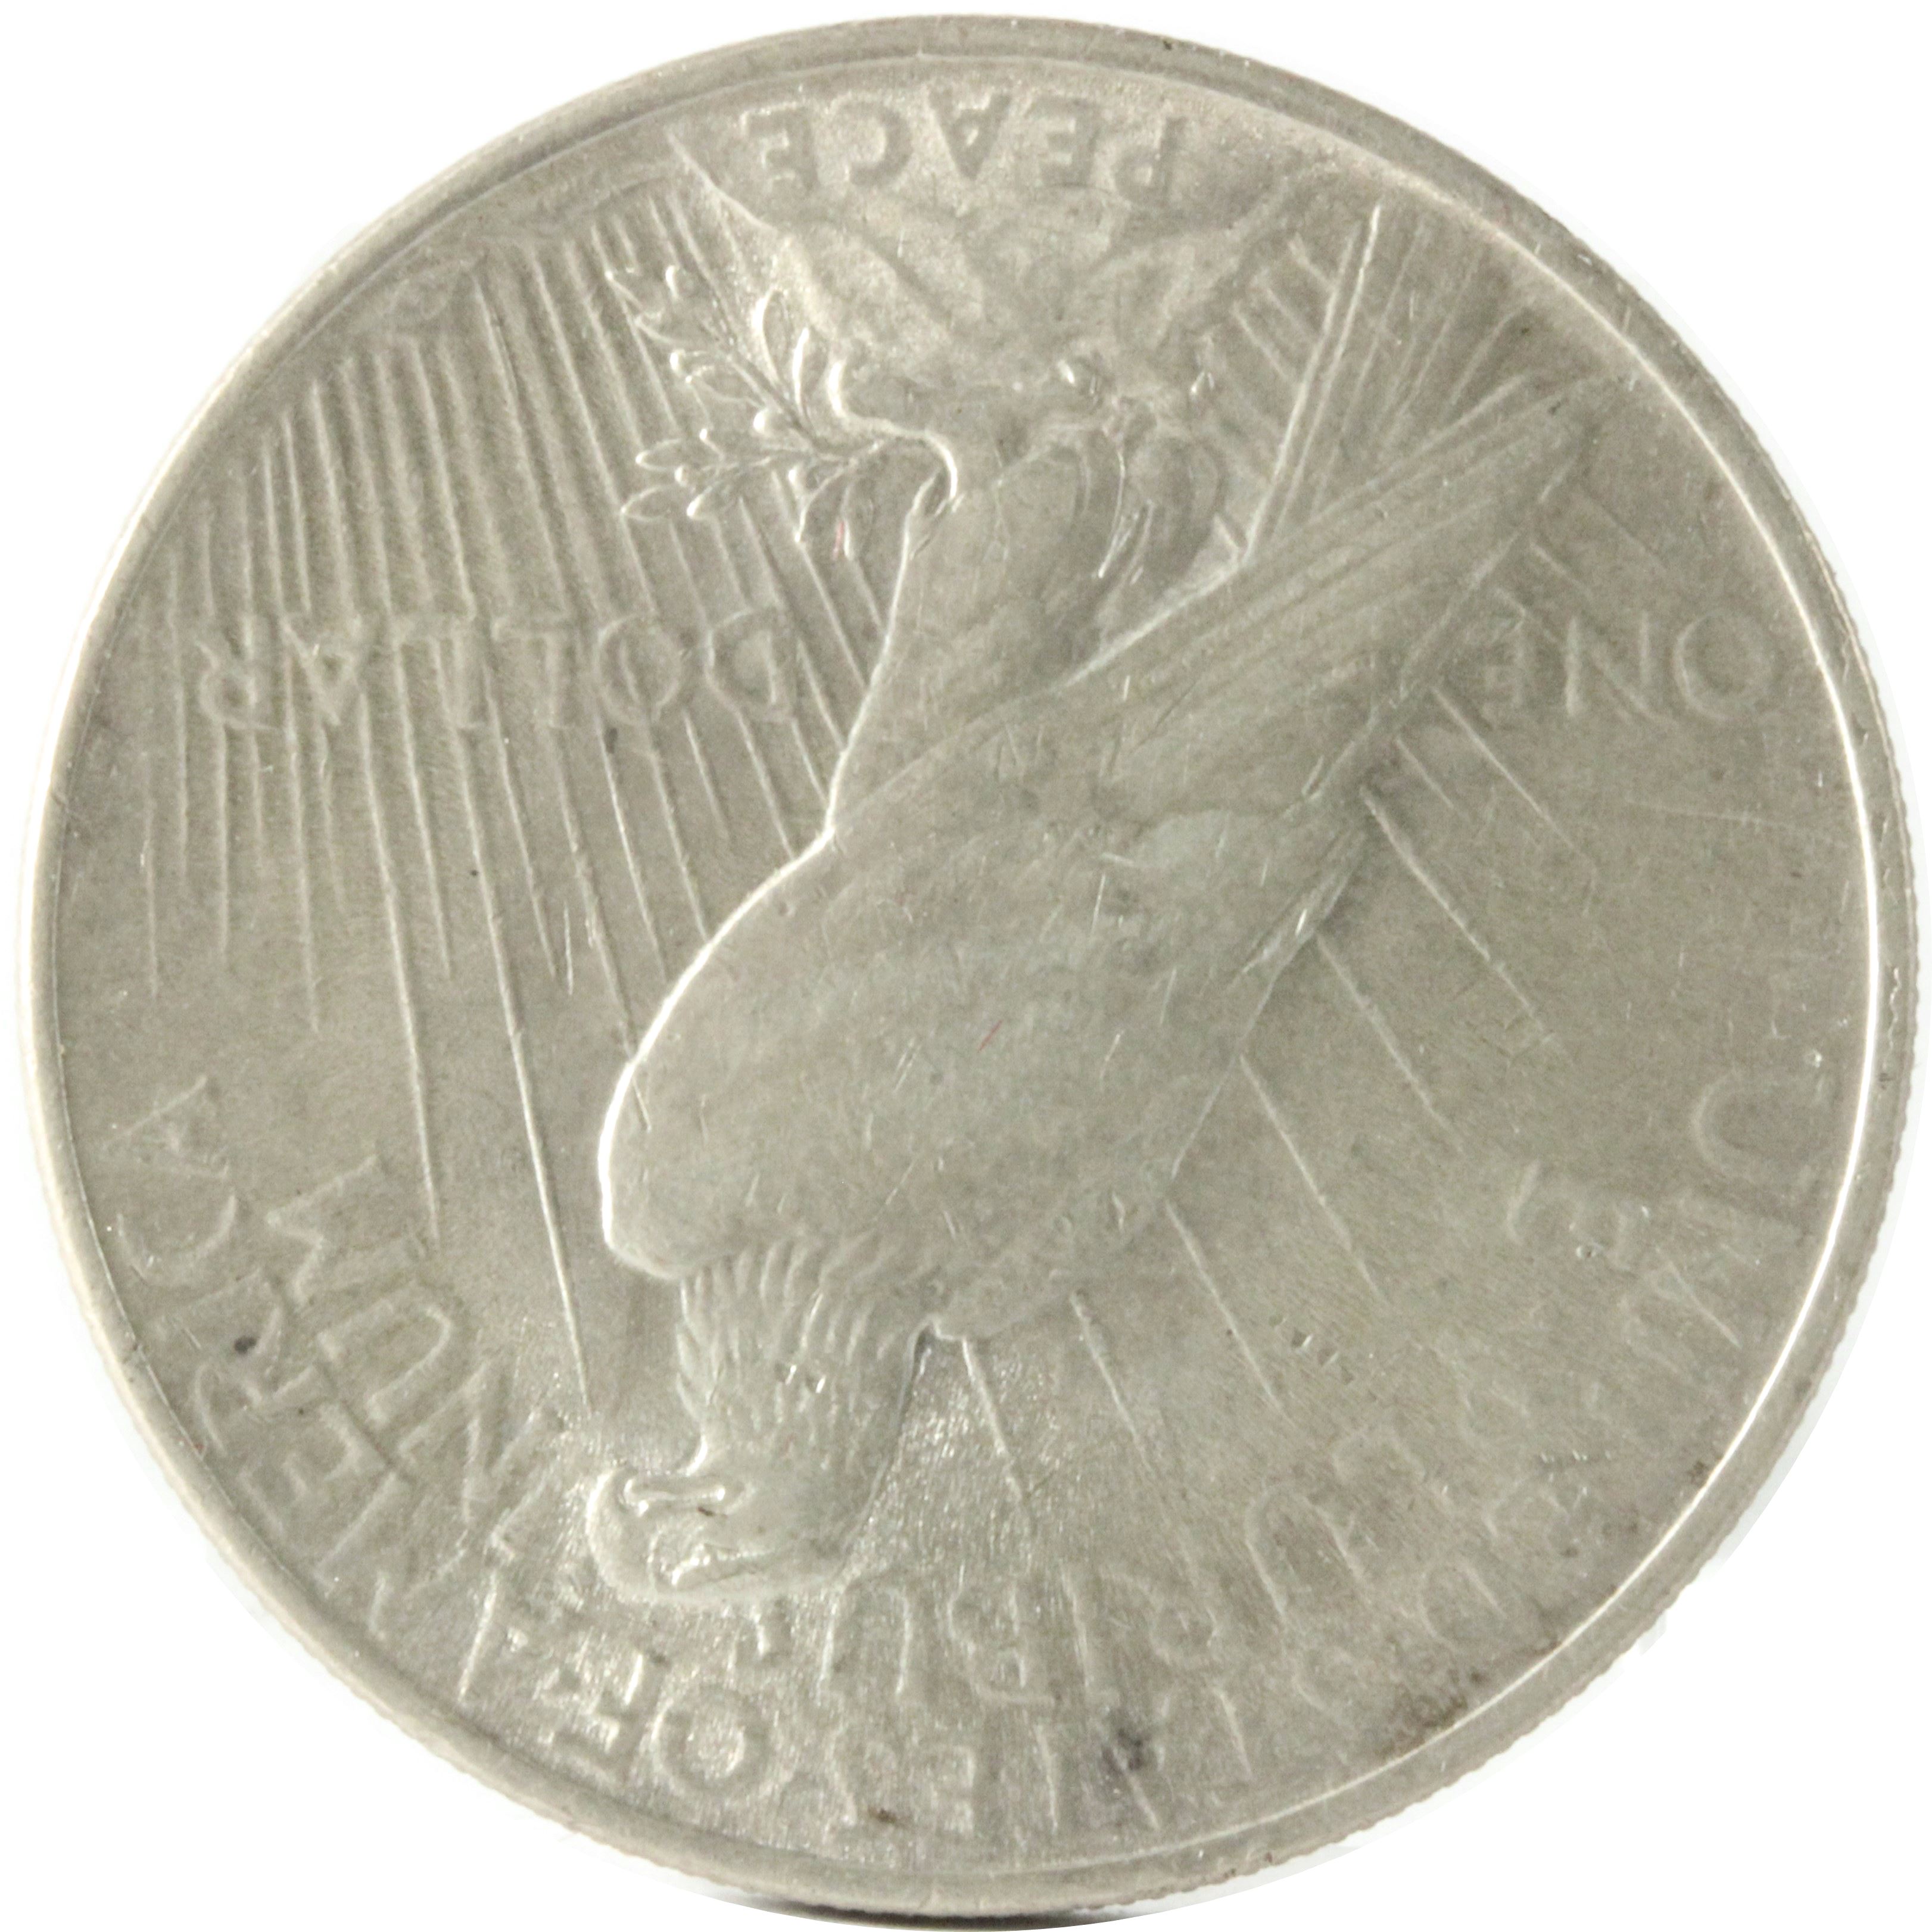 アメリカ 1ドル PEACE 銀貨 VF | ミスターコインズ